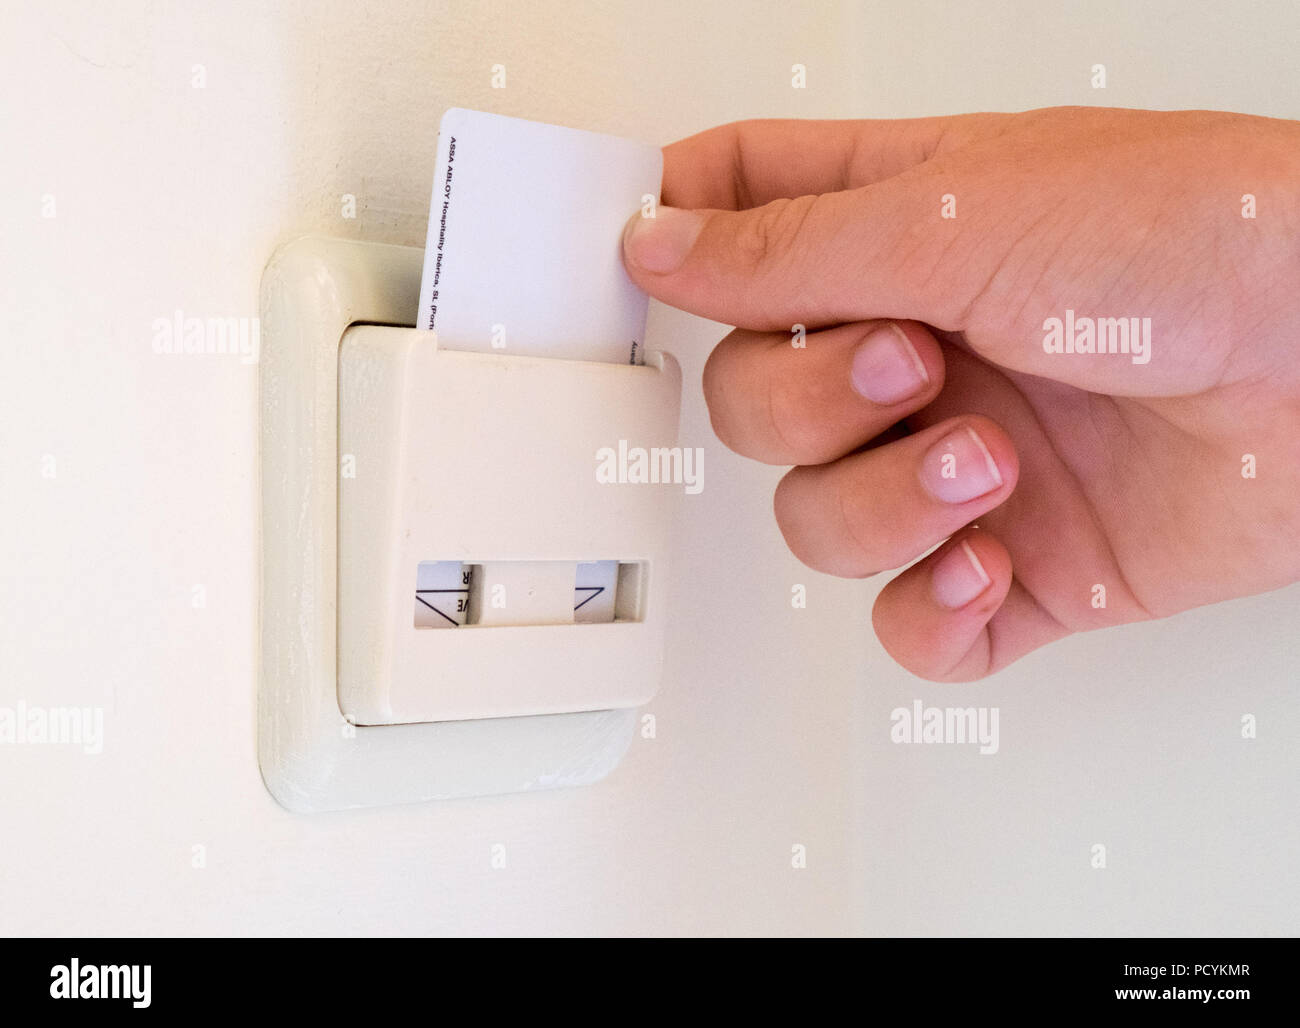 Hôtel key card placés dans une pièce à l'aide de l'interrupteur power Banque D'Images